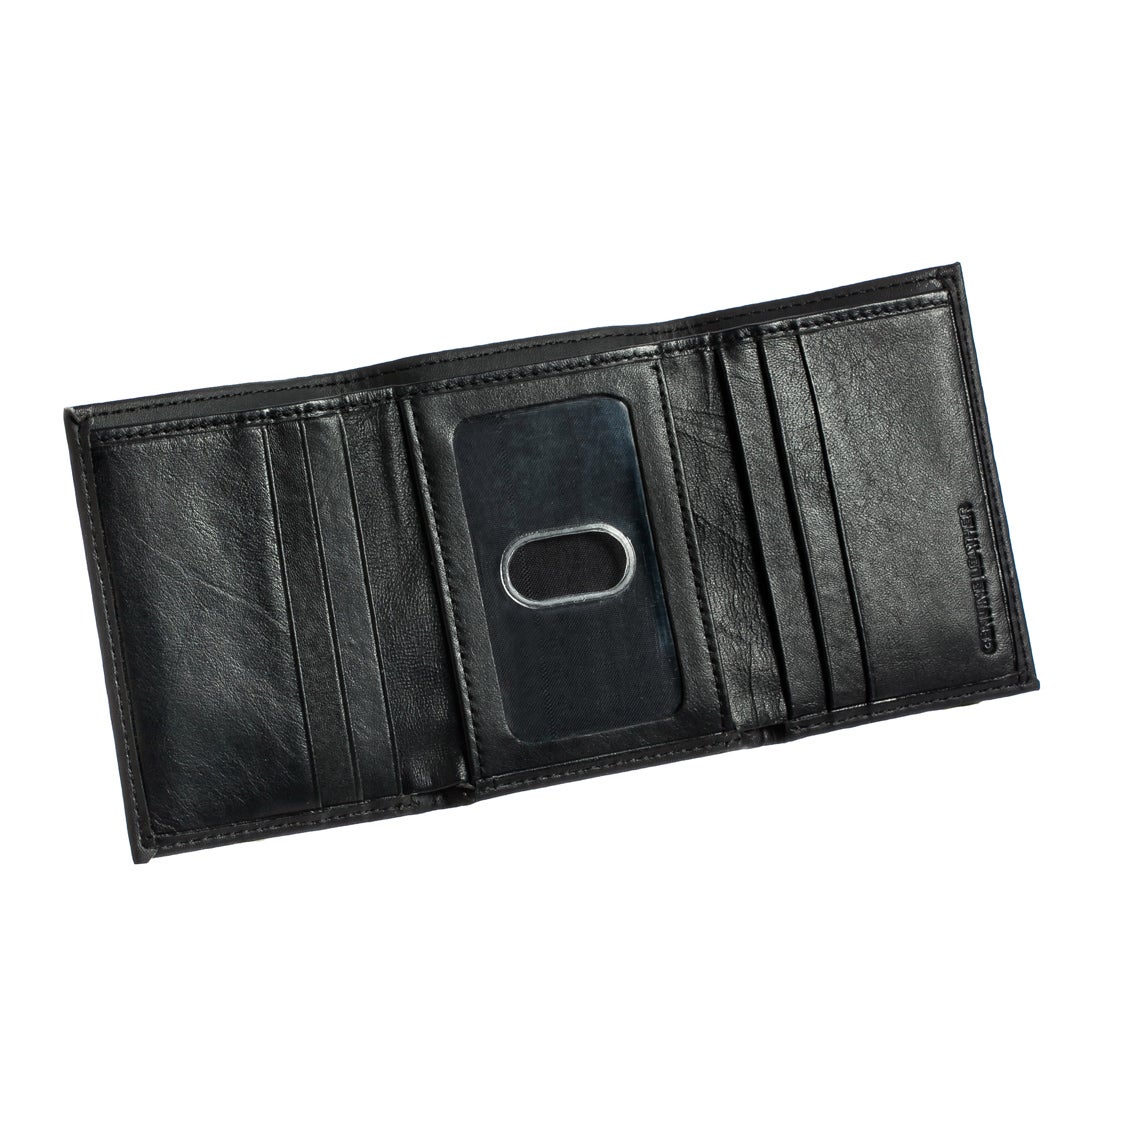 Dallas Cowboys Tri-Fold Leather Wallet